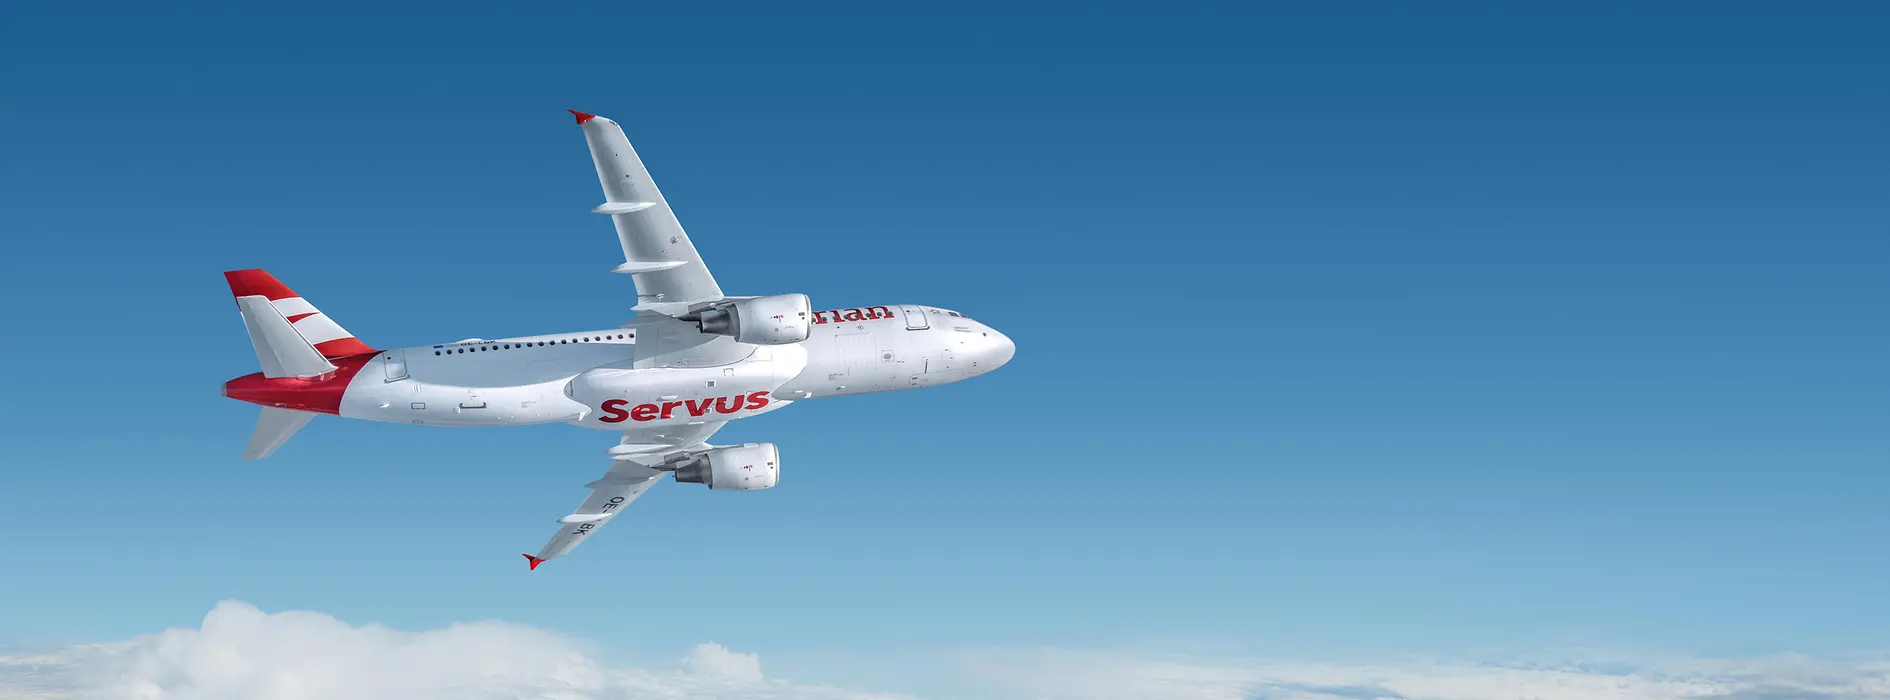 Aereo bianco con scritta rossa “Servus” di Austrian Airlines in volo sopra le nuvole